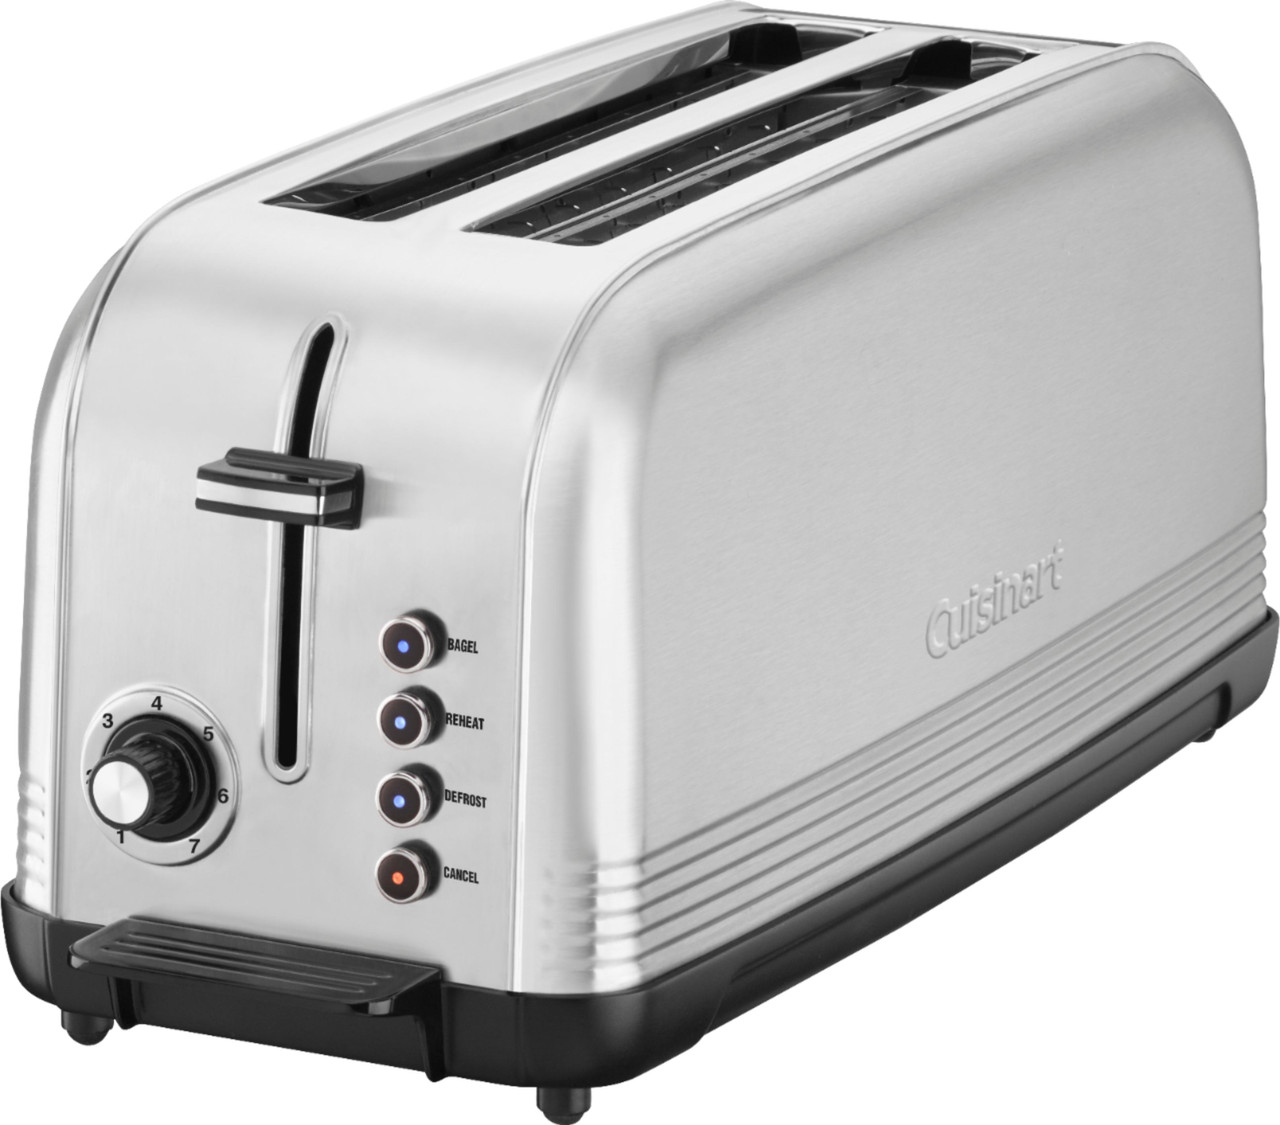 Cuisinart Long Slot Toaster - Stainless Steel